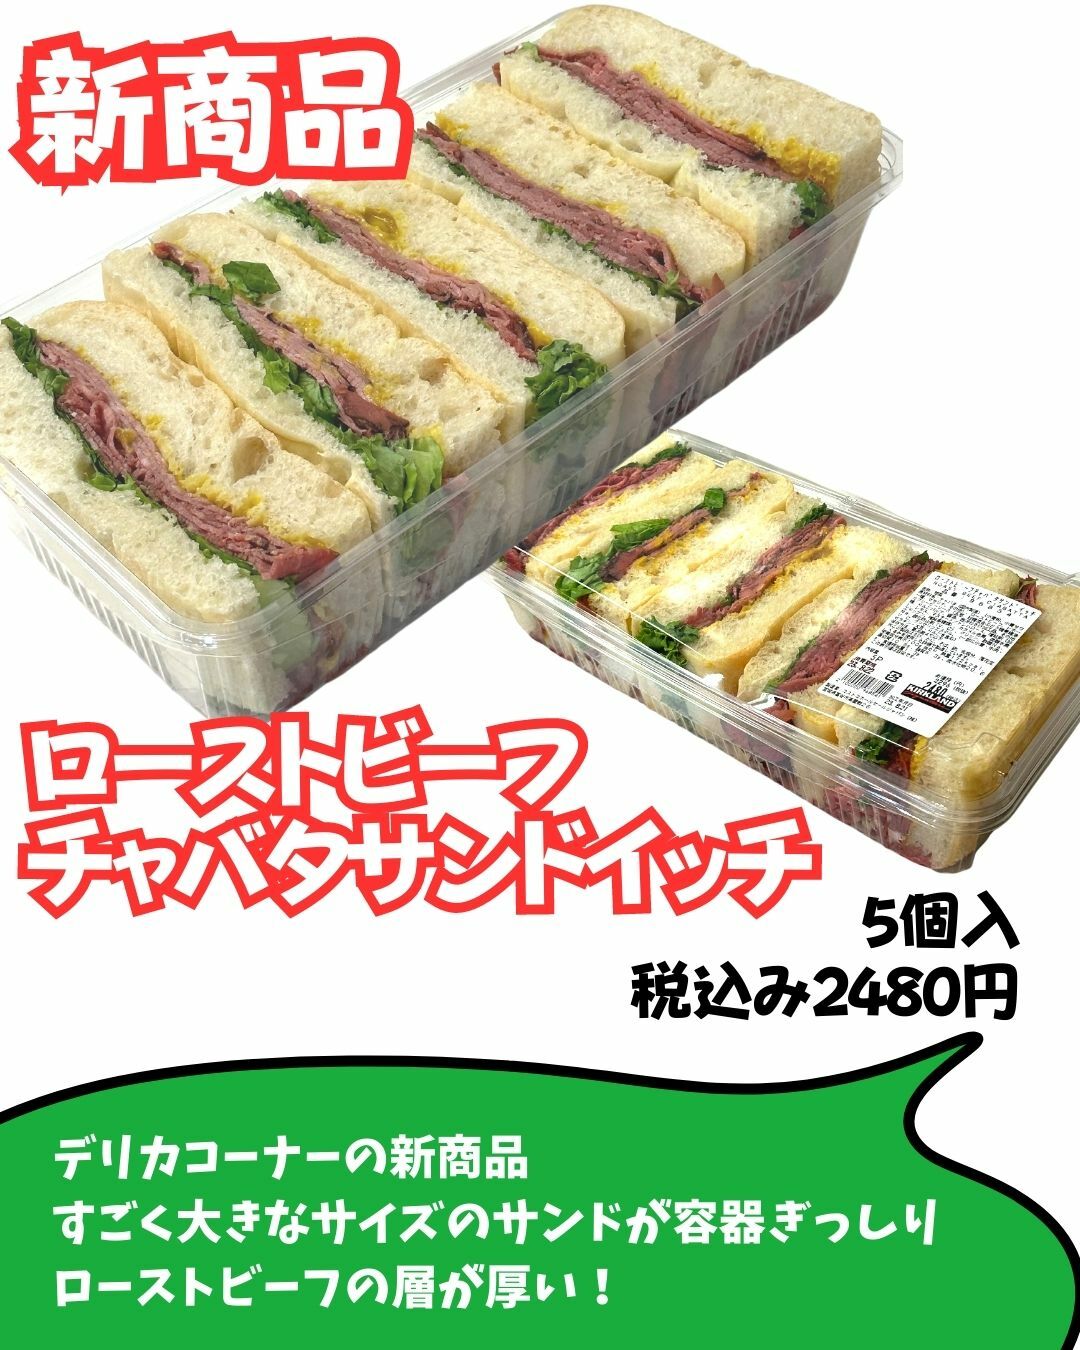 【コストコ】デリカ新商品サンドイッチ